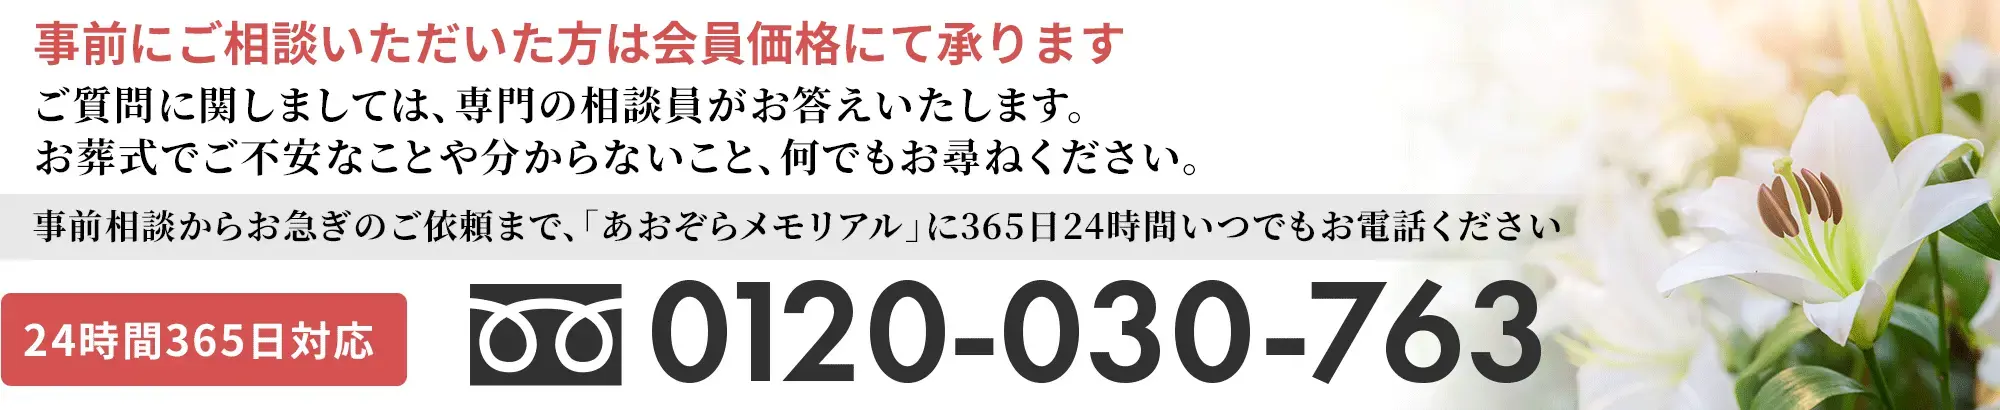 通夜、お葬式、葬儀の事前相談からお急ぎのご依頼は、札幌東区の家族葬「あおぞらメモリアル」まで365日24時間いつでもお電話ください。24時間365日対応 0120-030-763